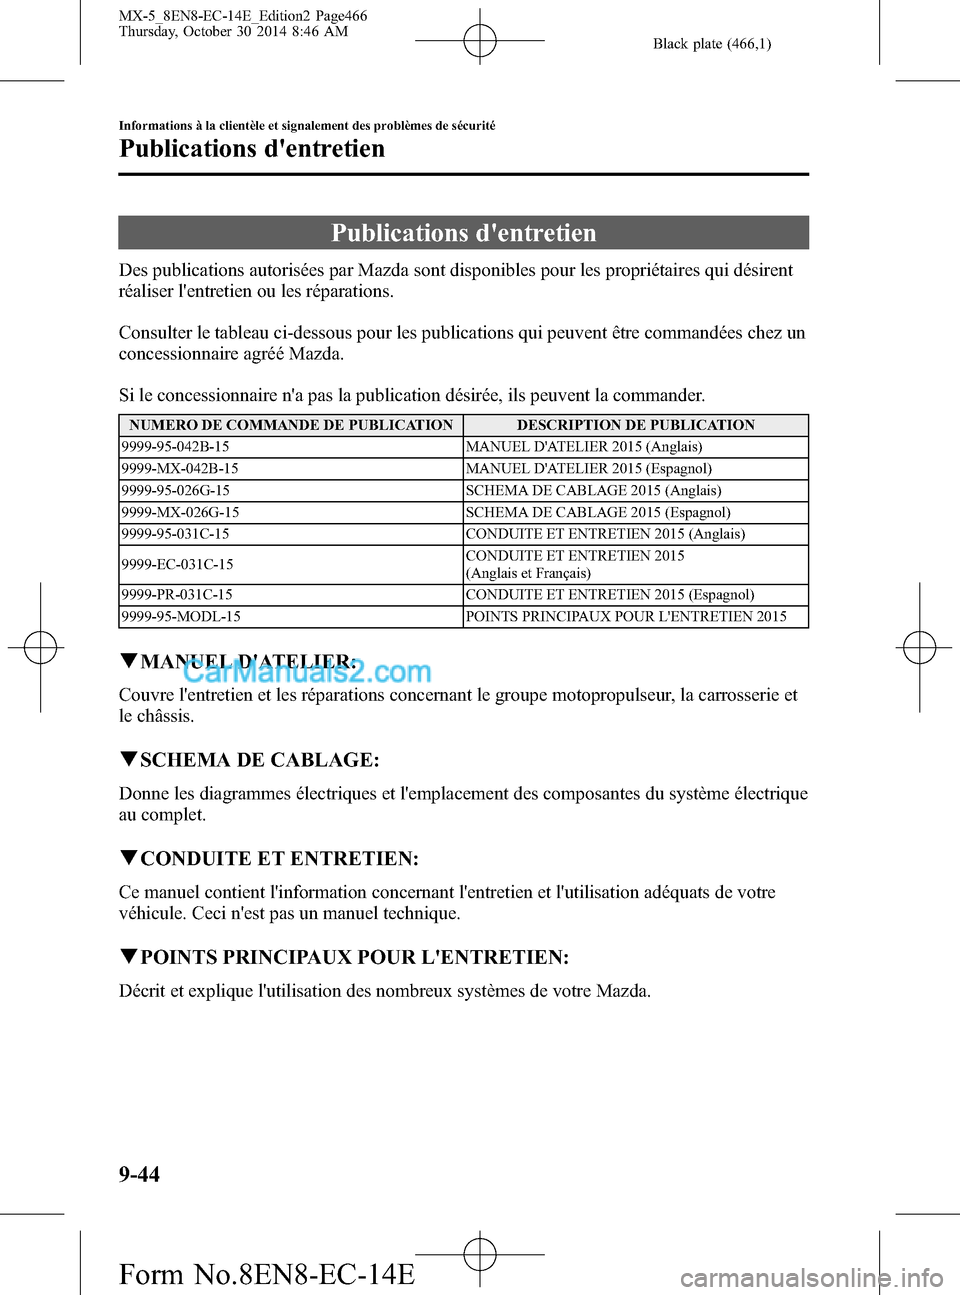 MAZDA MODEL MX-5 2015  Manuel du propriétaire (in French) Black plate (466,1)
Publications dentretien
Des publications autorisées par Mazda sont disponibles pour les propriétaires qui désirent
réaliser lentretien ou les réparations.
Consulter le table